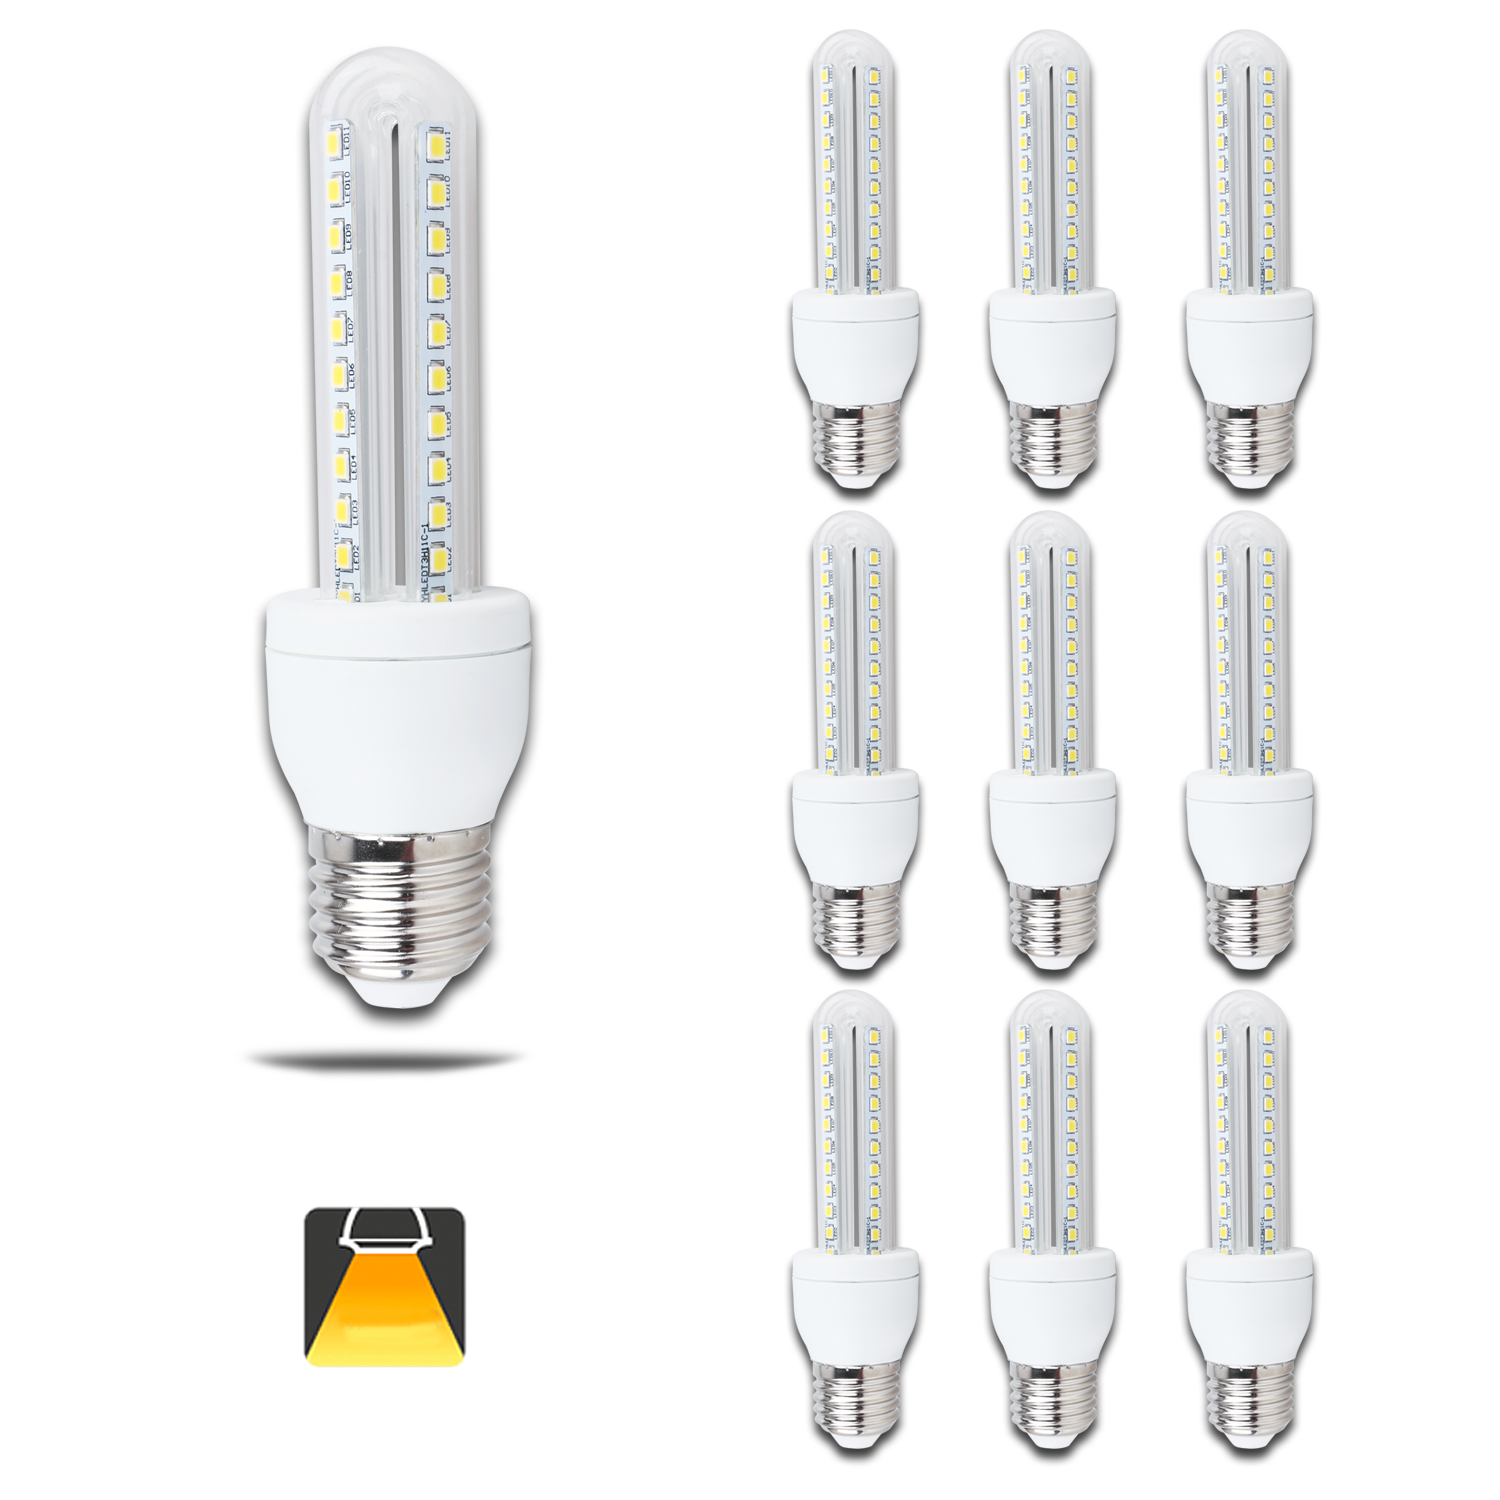 Aigostar - Confezione da 10 Lampadine LED B5 T3 2U, 8W, E27, 640 lumen, Luce Calda 3000K [Classe di efficienza energetica A+]